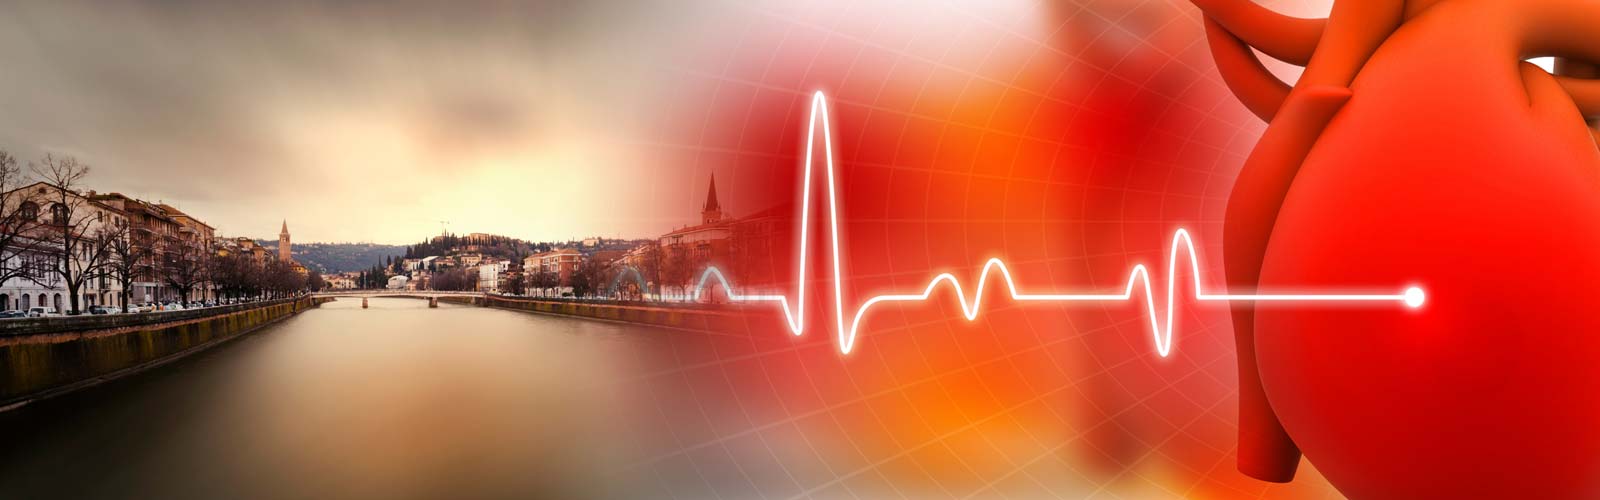 50 anni di Cardiologia a Verona